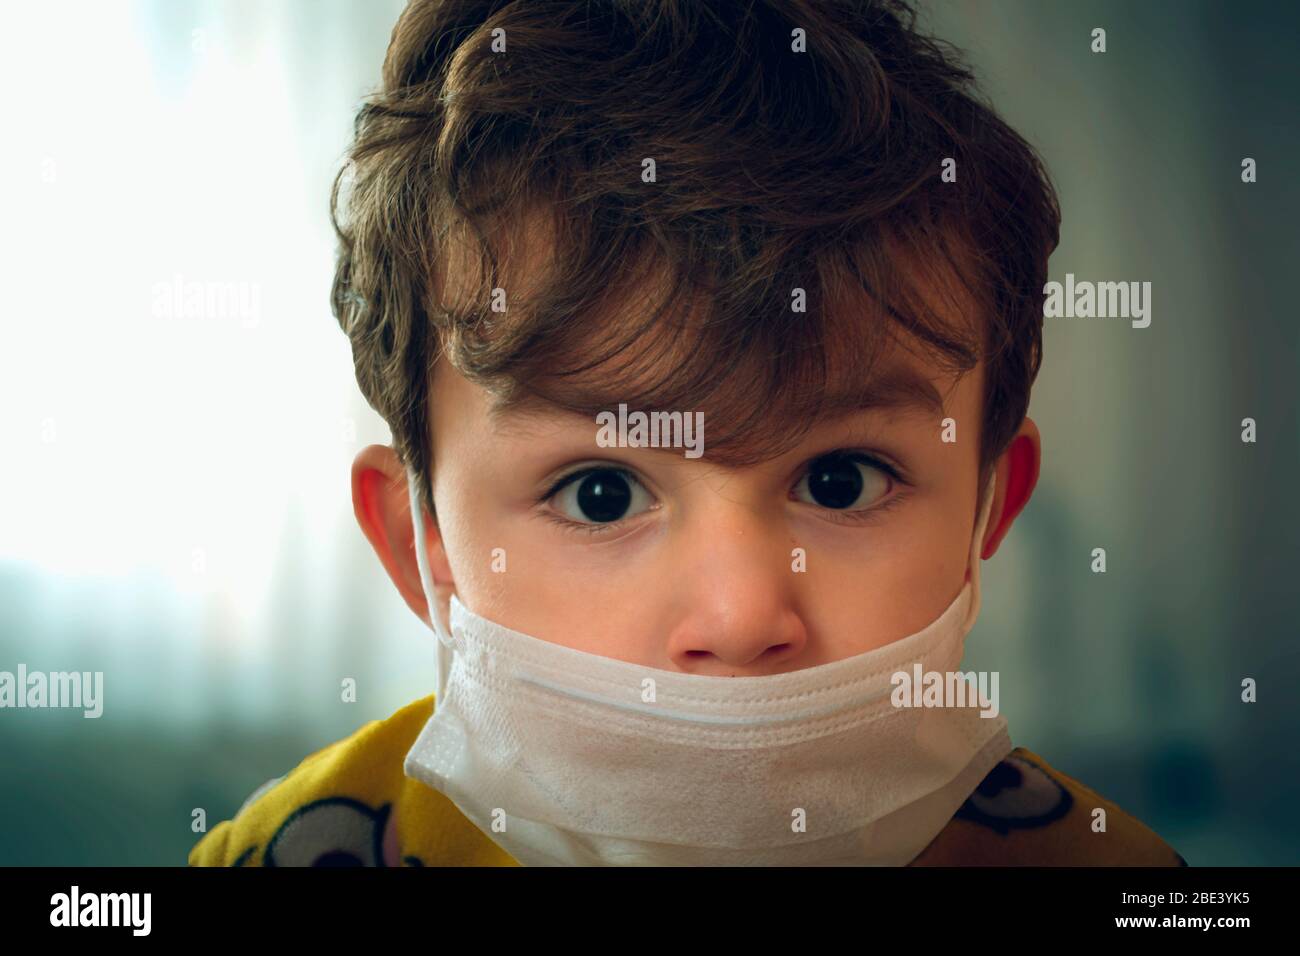 Bébé turc de 3 ans portant un masque chirurgical se tourrant avec anxiété à l'appareil photo Banque D'Images